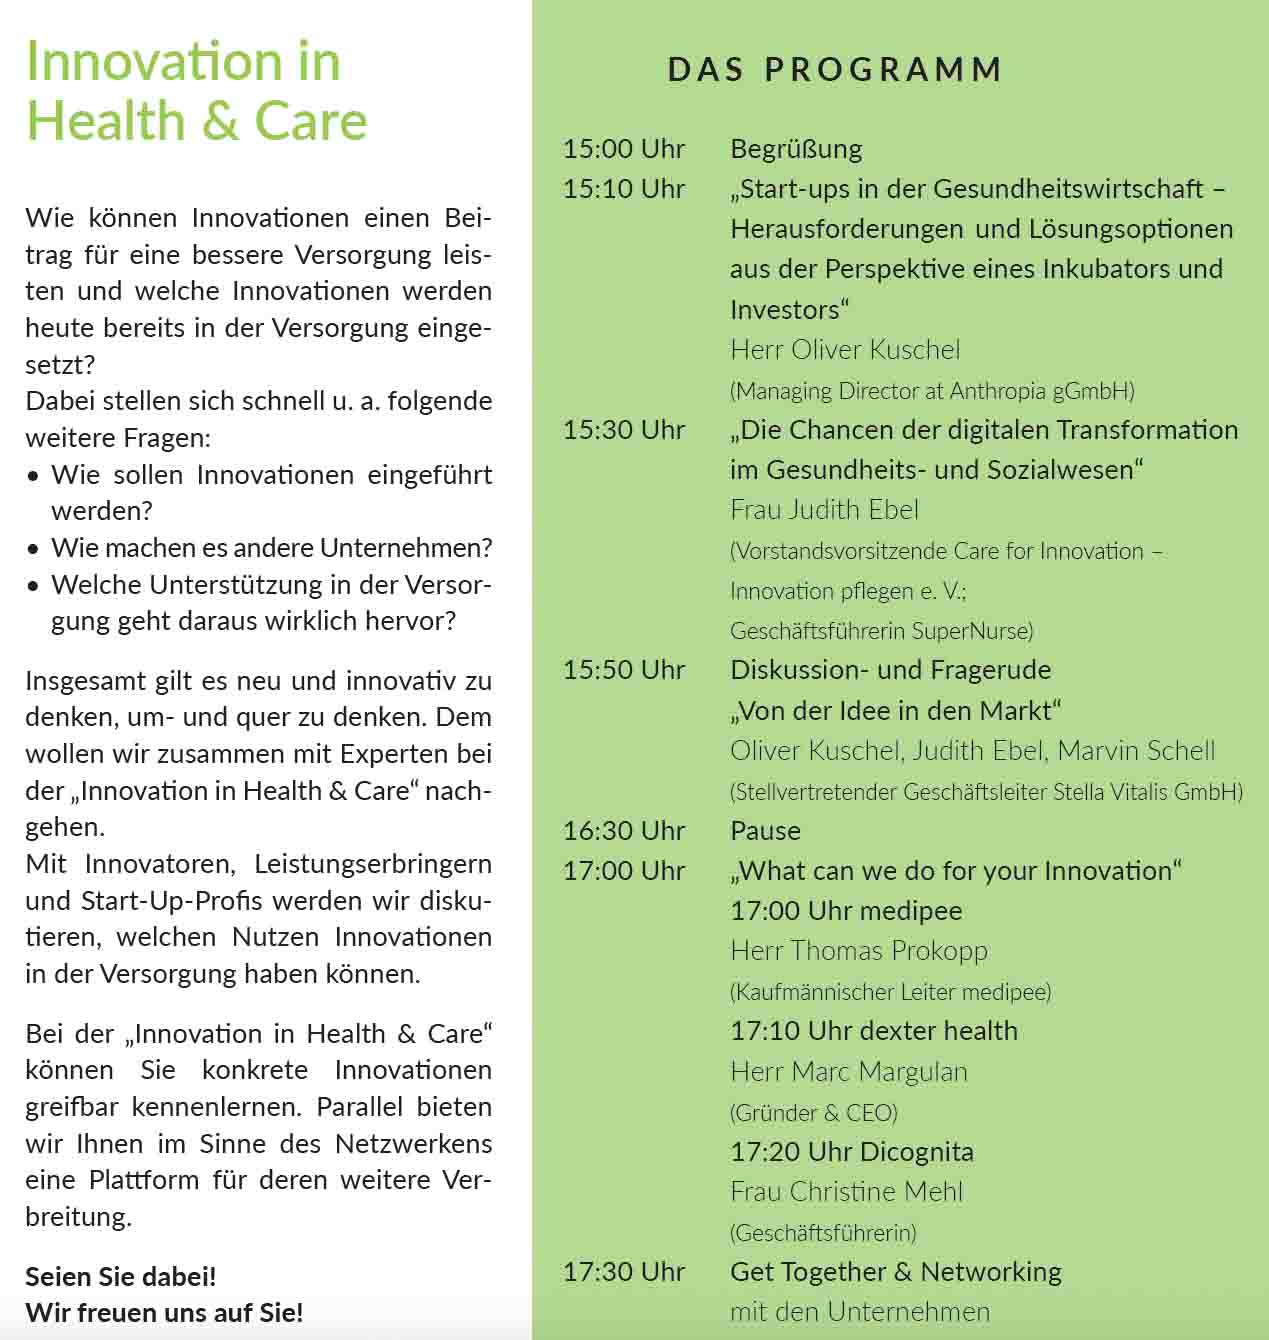 Einladung zur Veranstaltung "Innovation in Health & Care" 